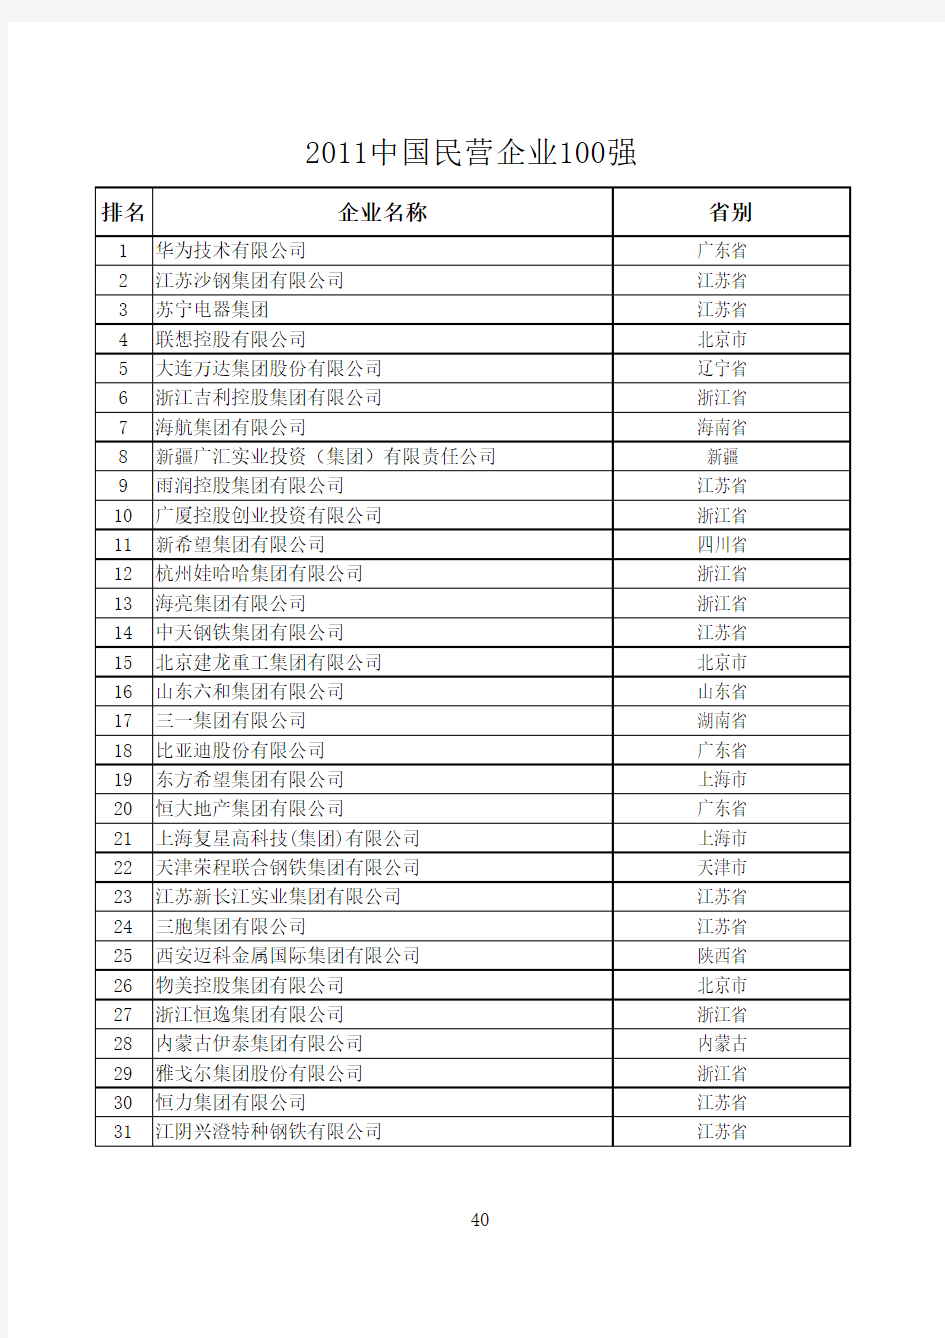 2011年中国民营企业100强名单